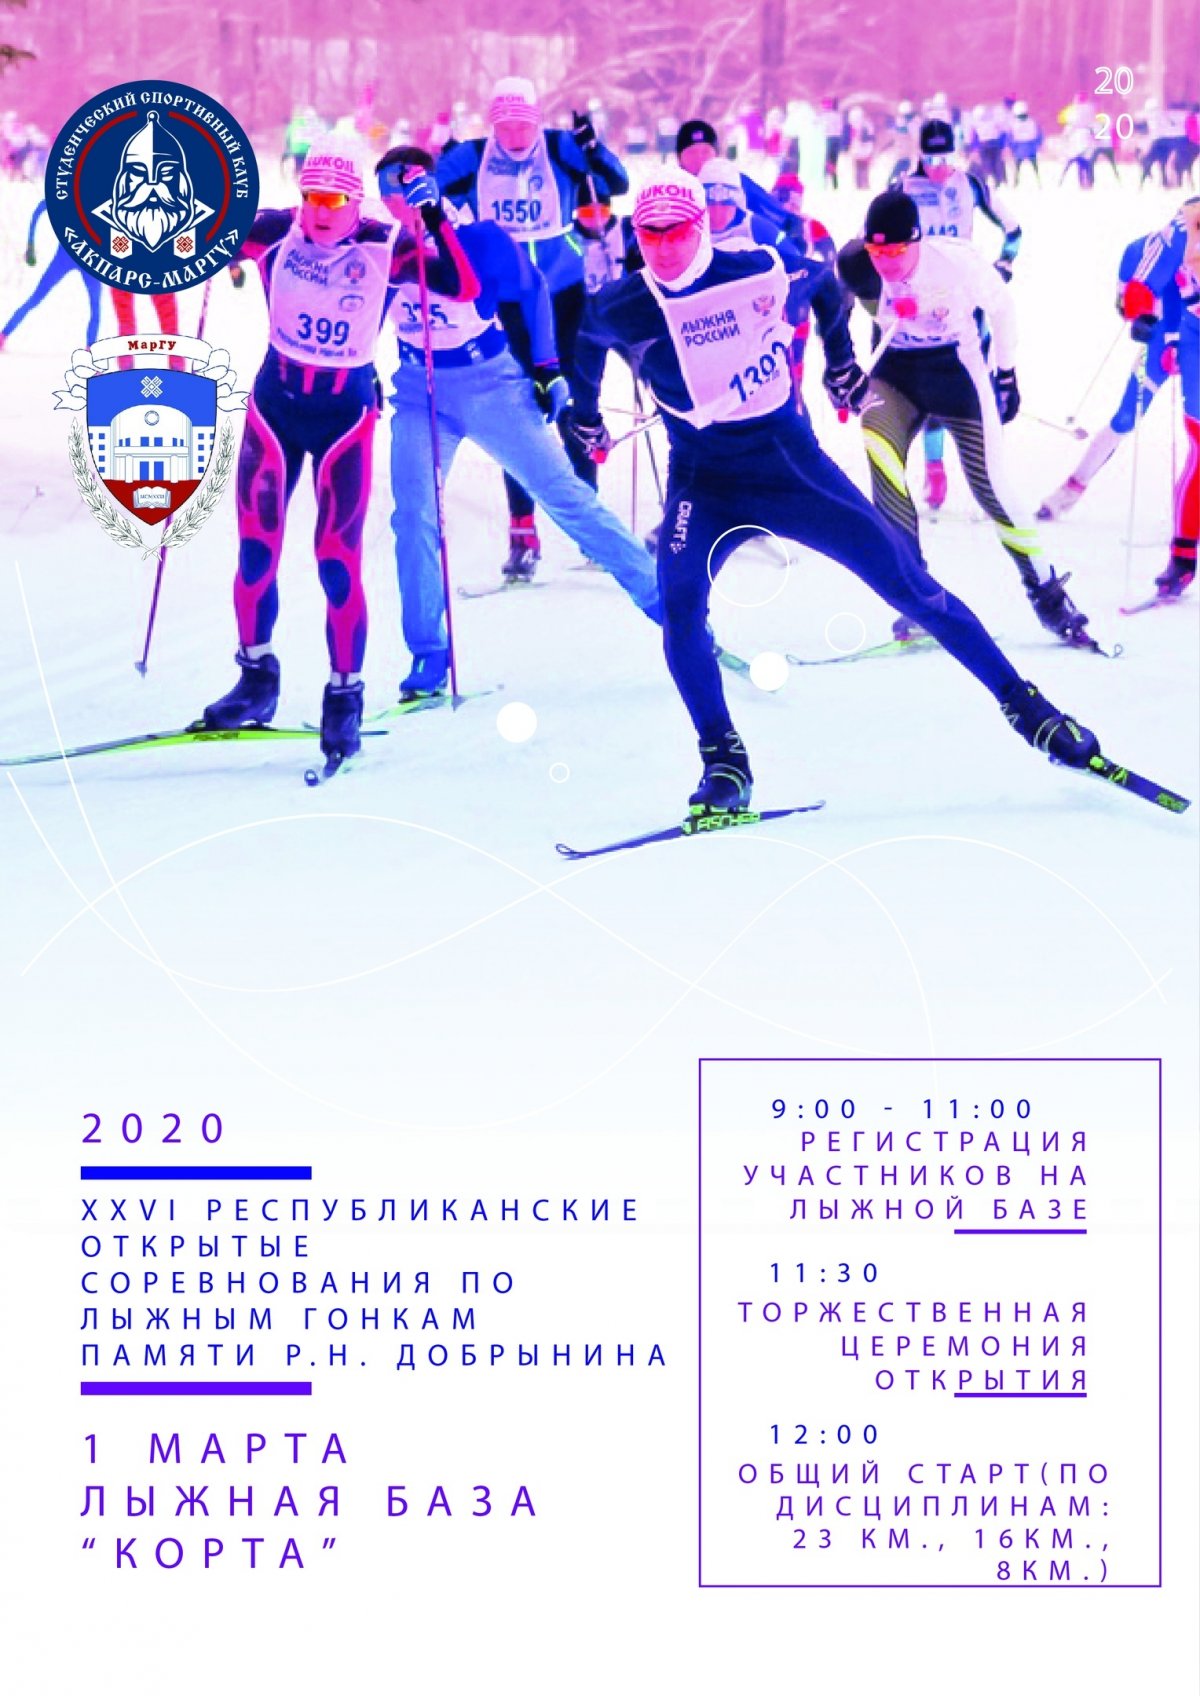 Студенческий спортивный клуб «Акпарс-МарГУ» проводит XXVI Республиканские Открытые соревнования по лыжным гонкам памяти Рудольфа Николаевича Добрынина ⛷